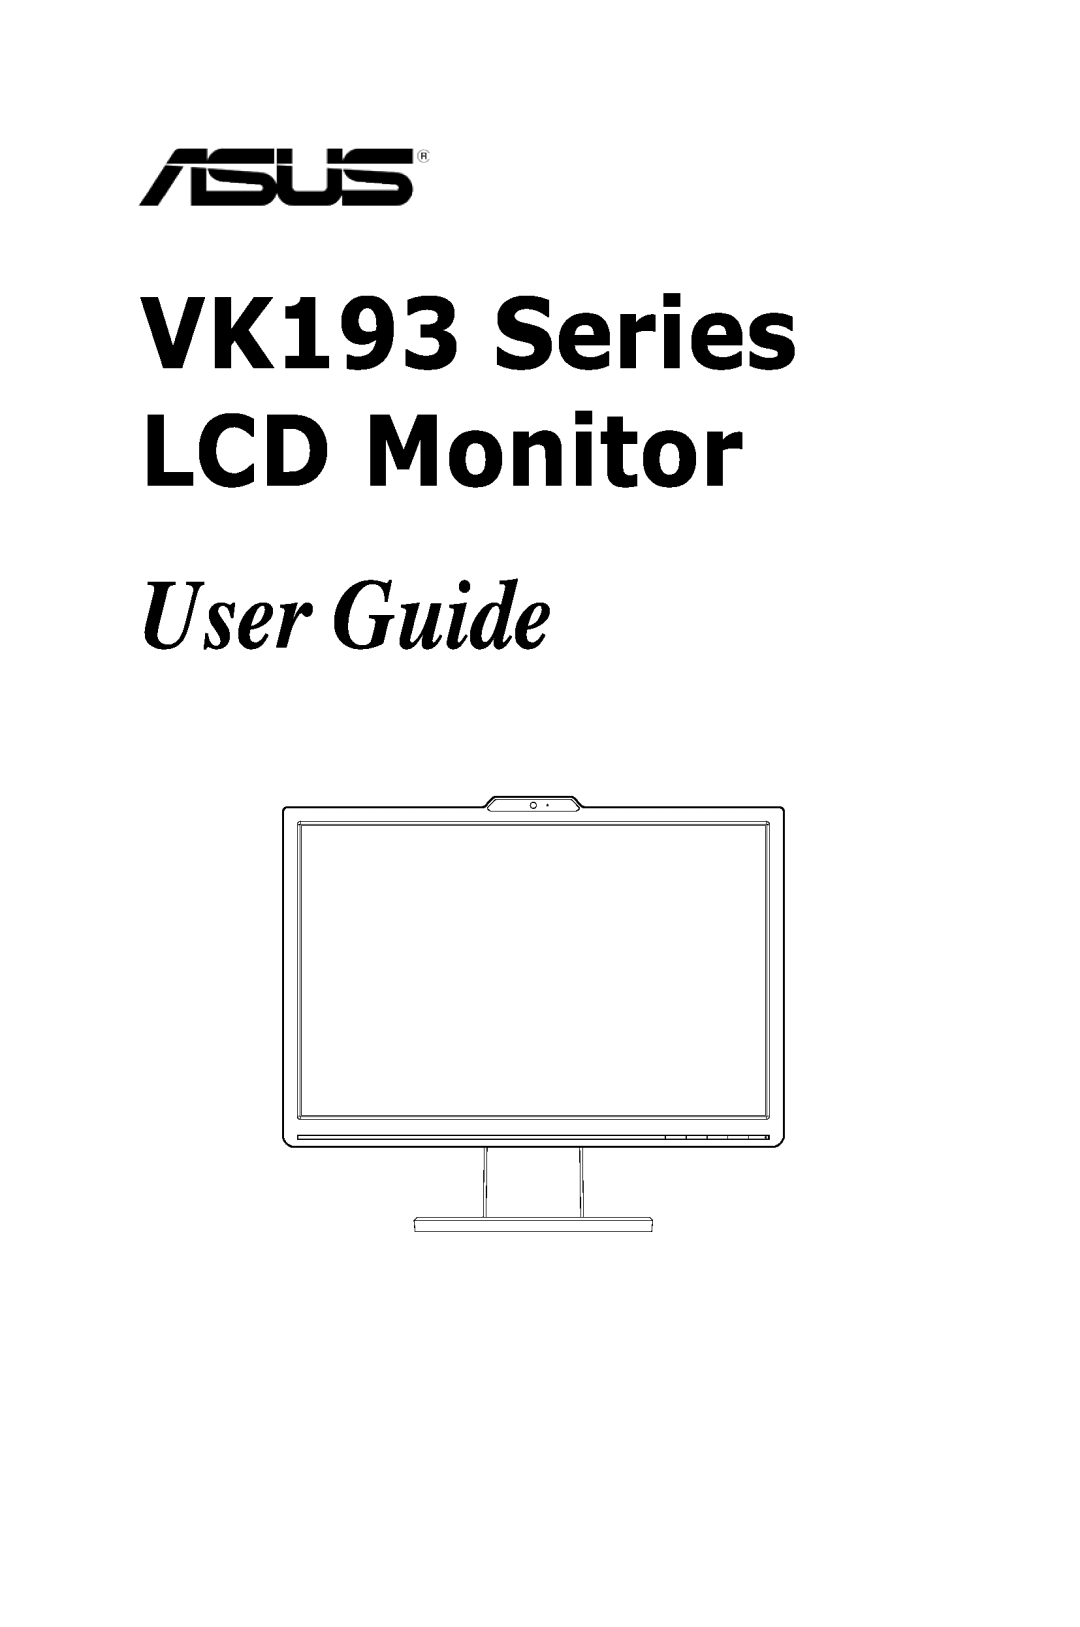 Asus manual User Guide, VK193 Series LCD Monitor 